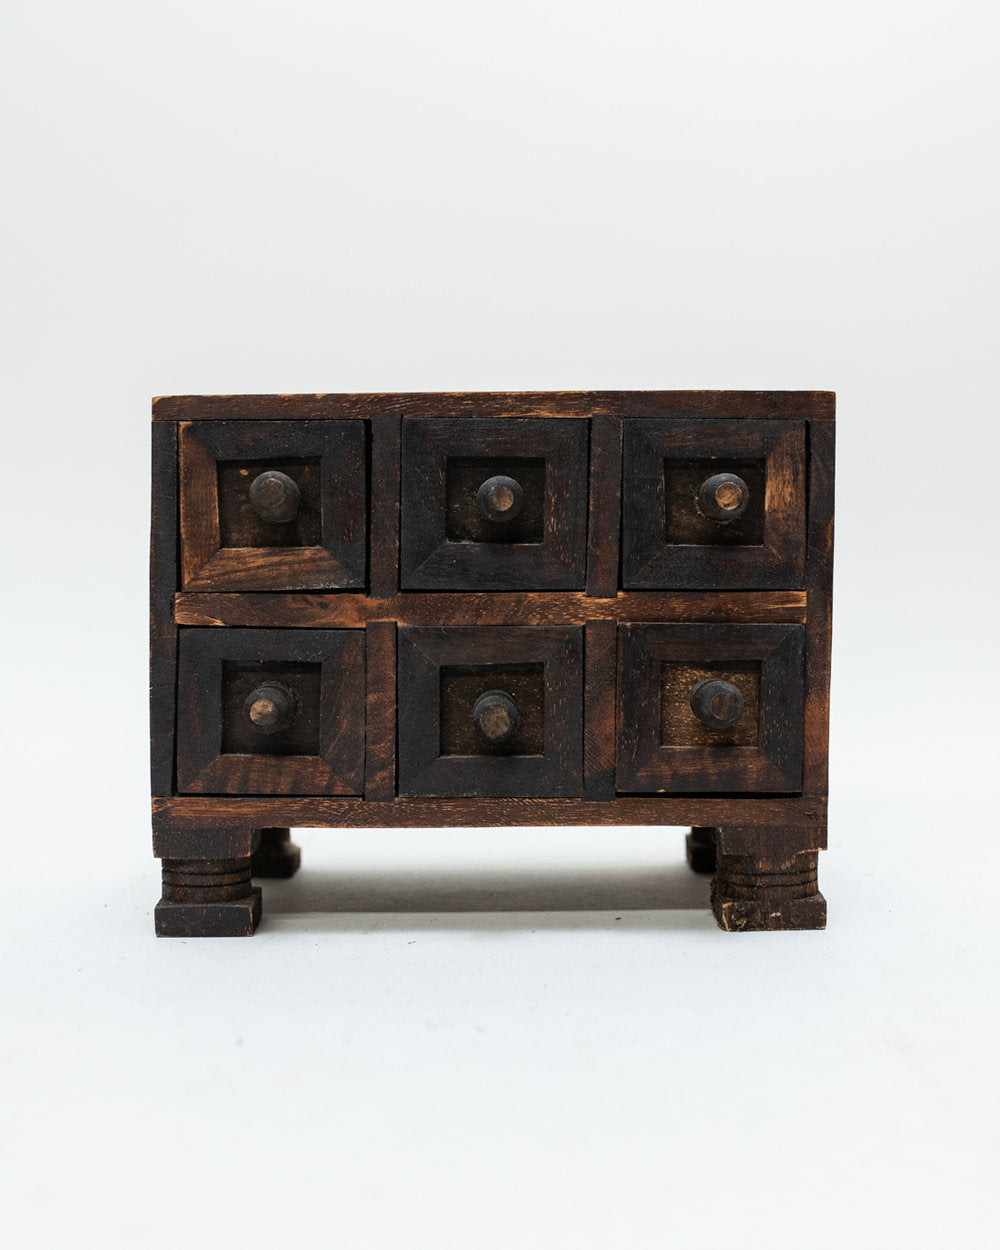 1900 年代早期的木制首饰盒